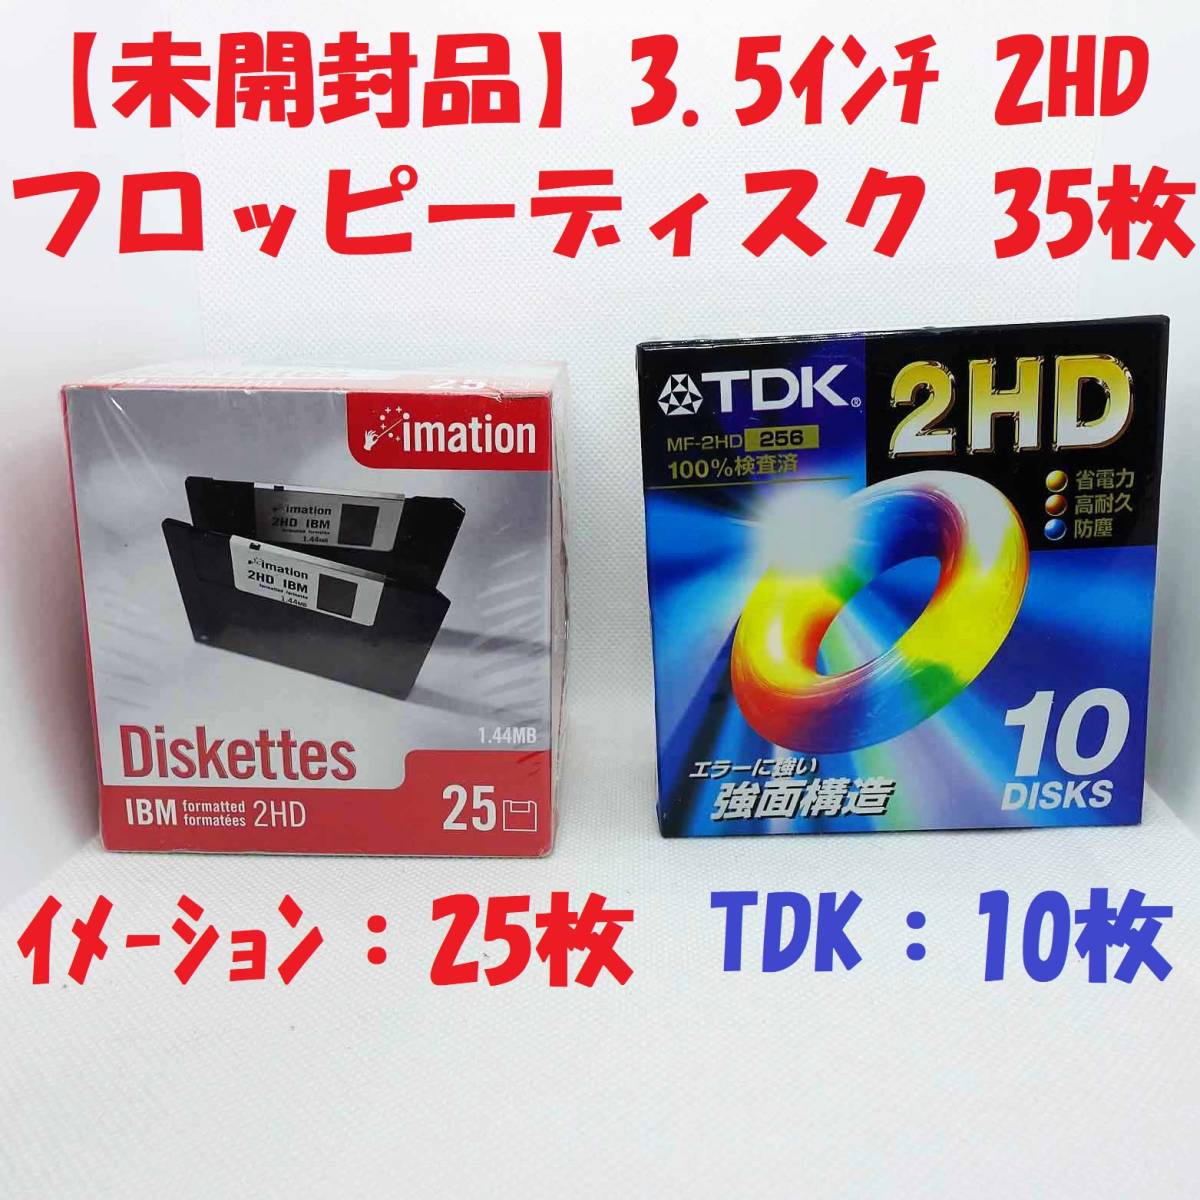 【 не вскрытый  *   новый товар 】3.5 дюймов 2HD... диск  35 шт.  комплект  （...：25 шт.  , TDK：10 шт. ）imation